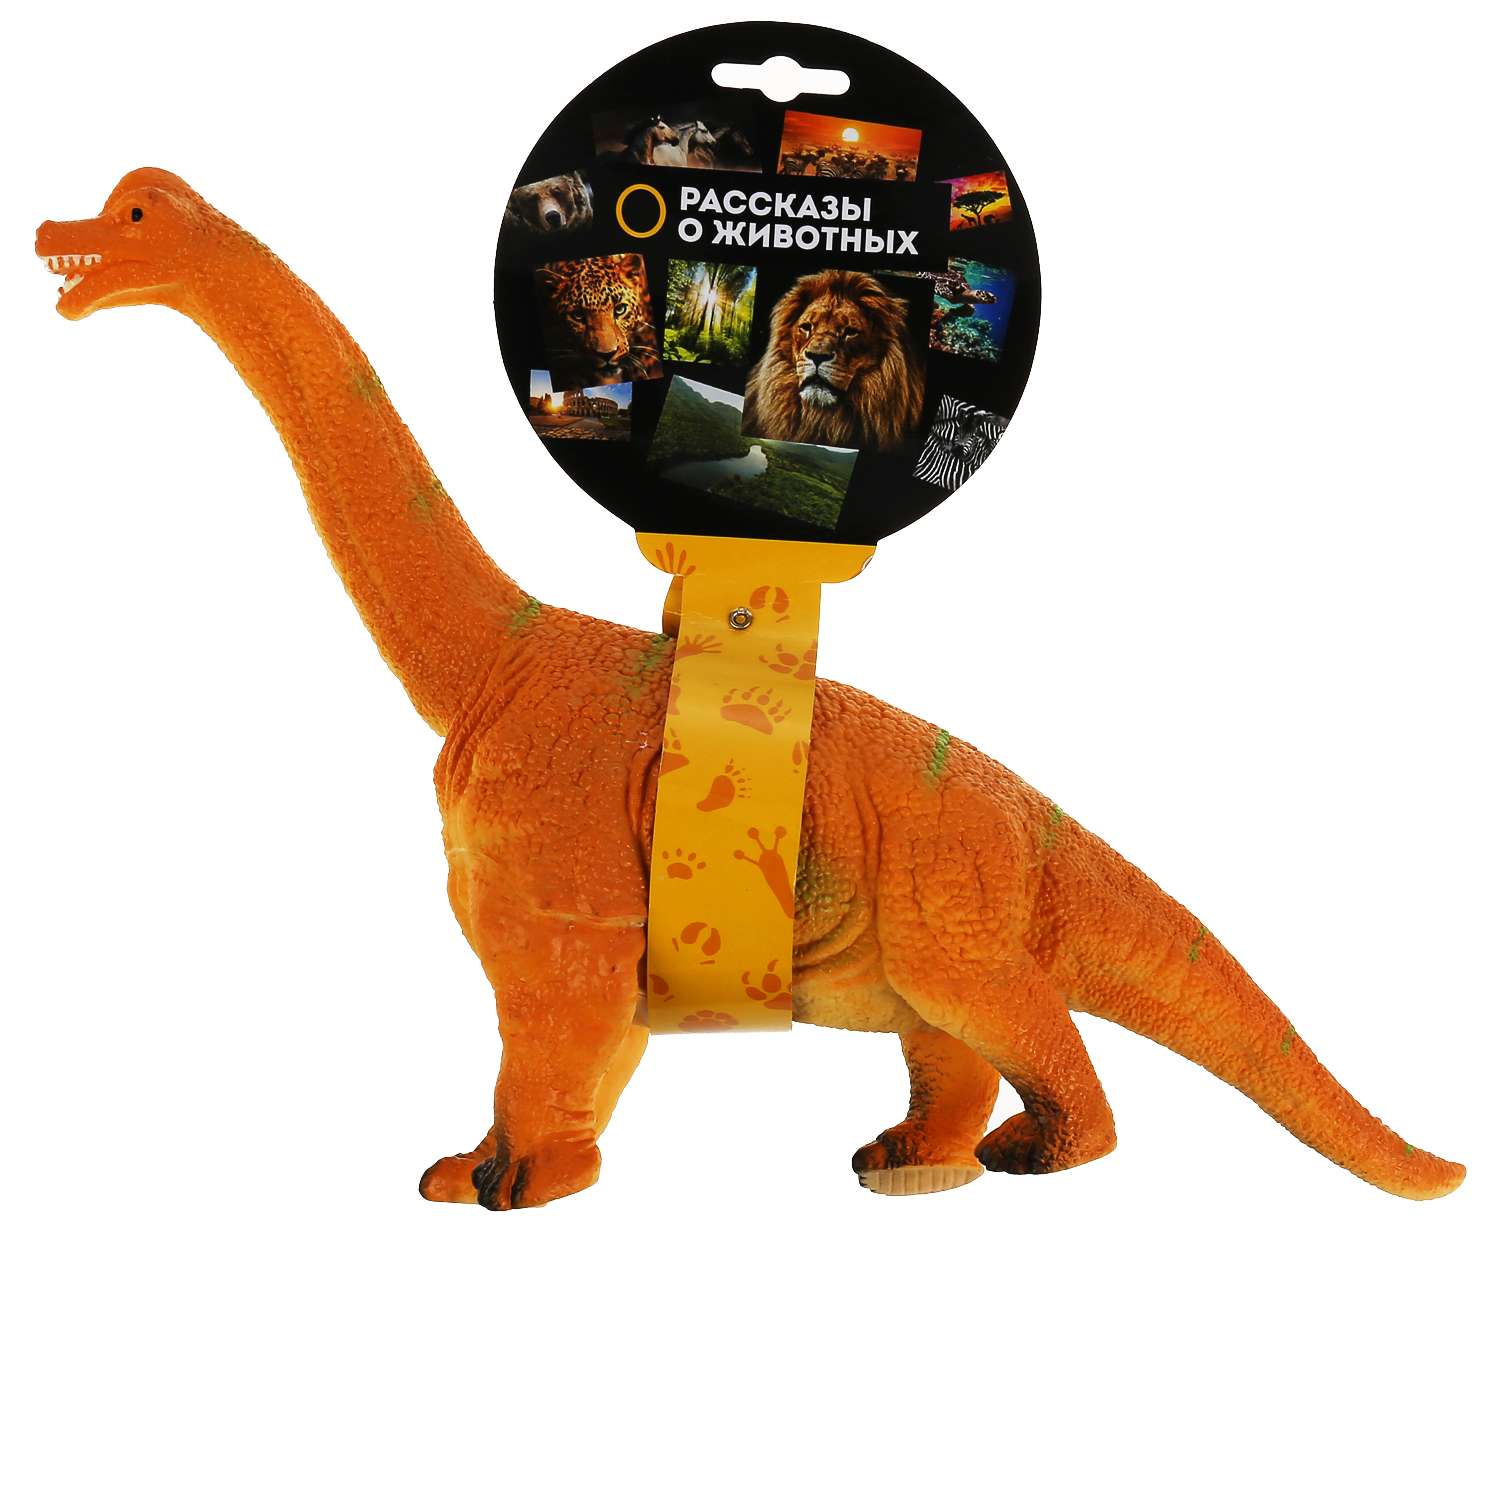 Игрушка Играем Вместе Пластизоль динозавр брахиозавр 298166 - фото 2